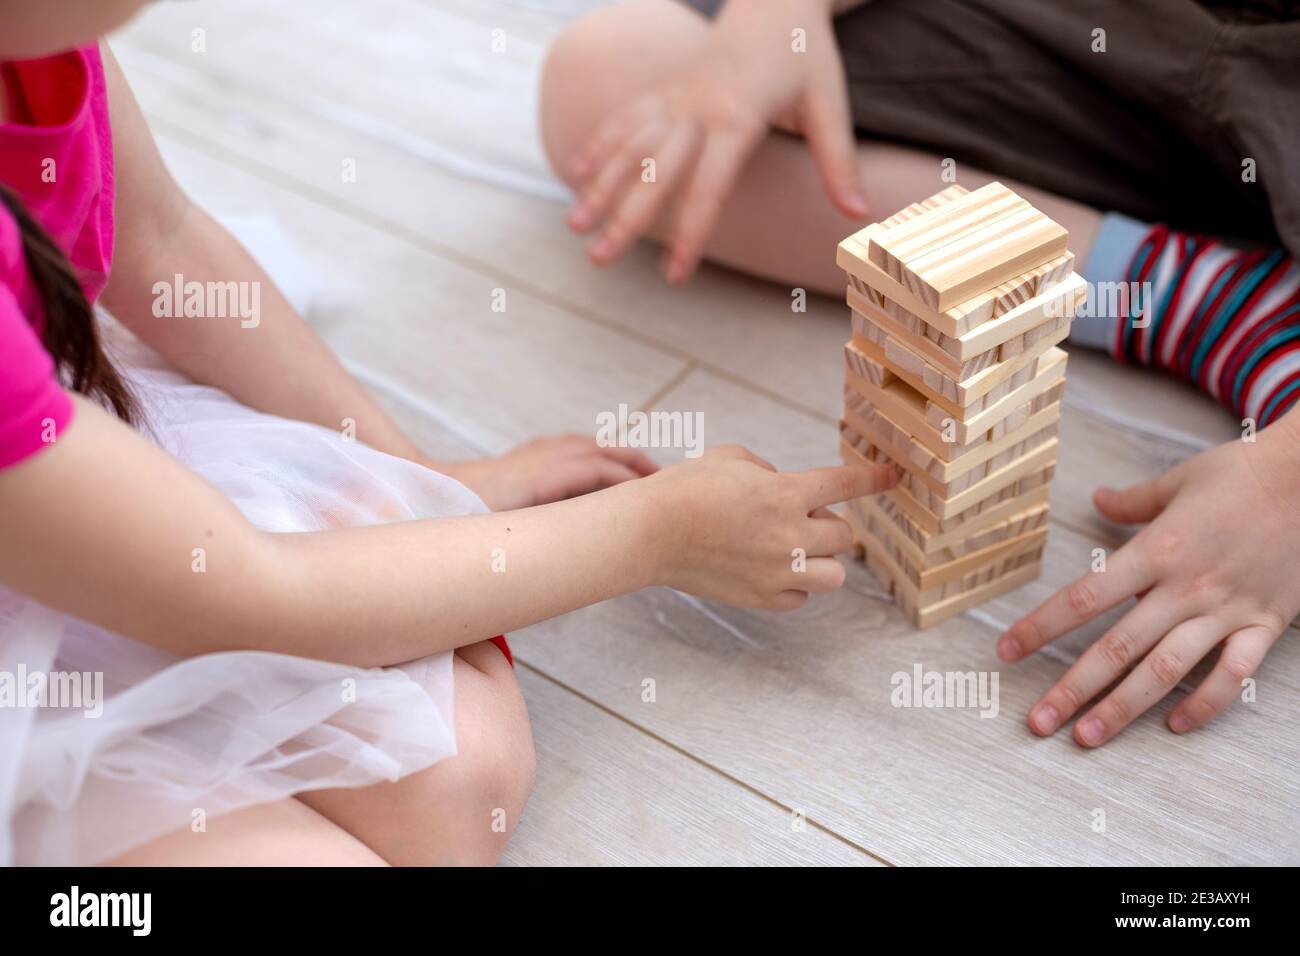 Le mani dei bambini raccolgono una torre di blocchi di legno sul pavimento. Foto Stock